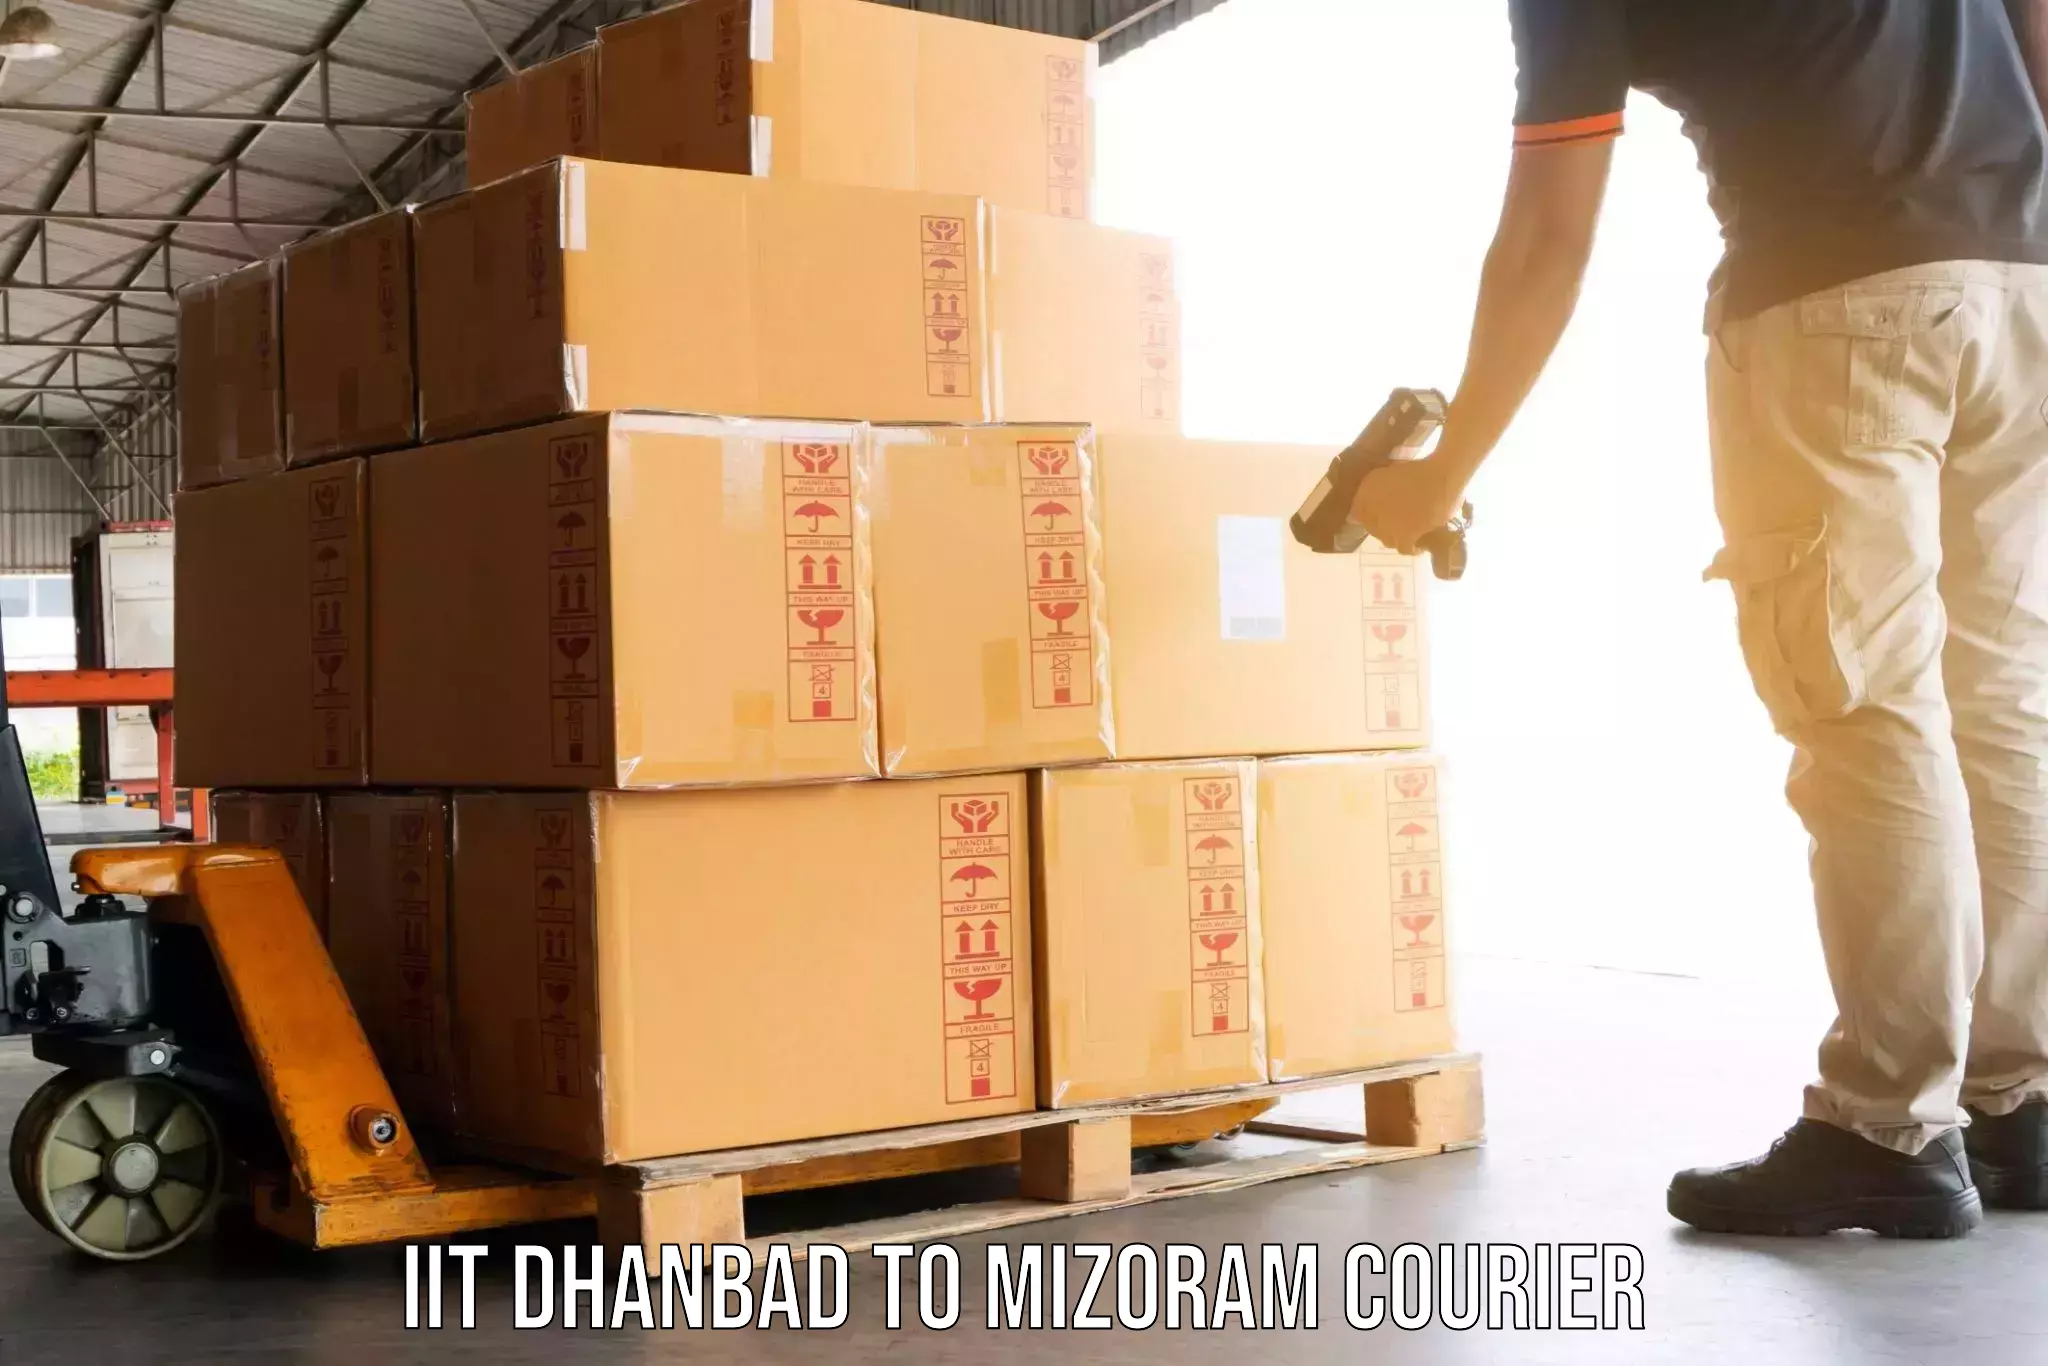 Nationwide furniture transport IIT Dhanbad to Mizoram